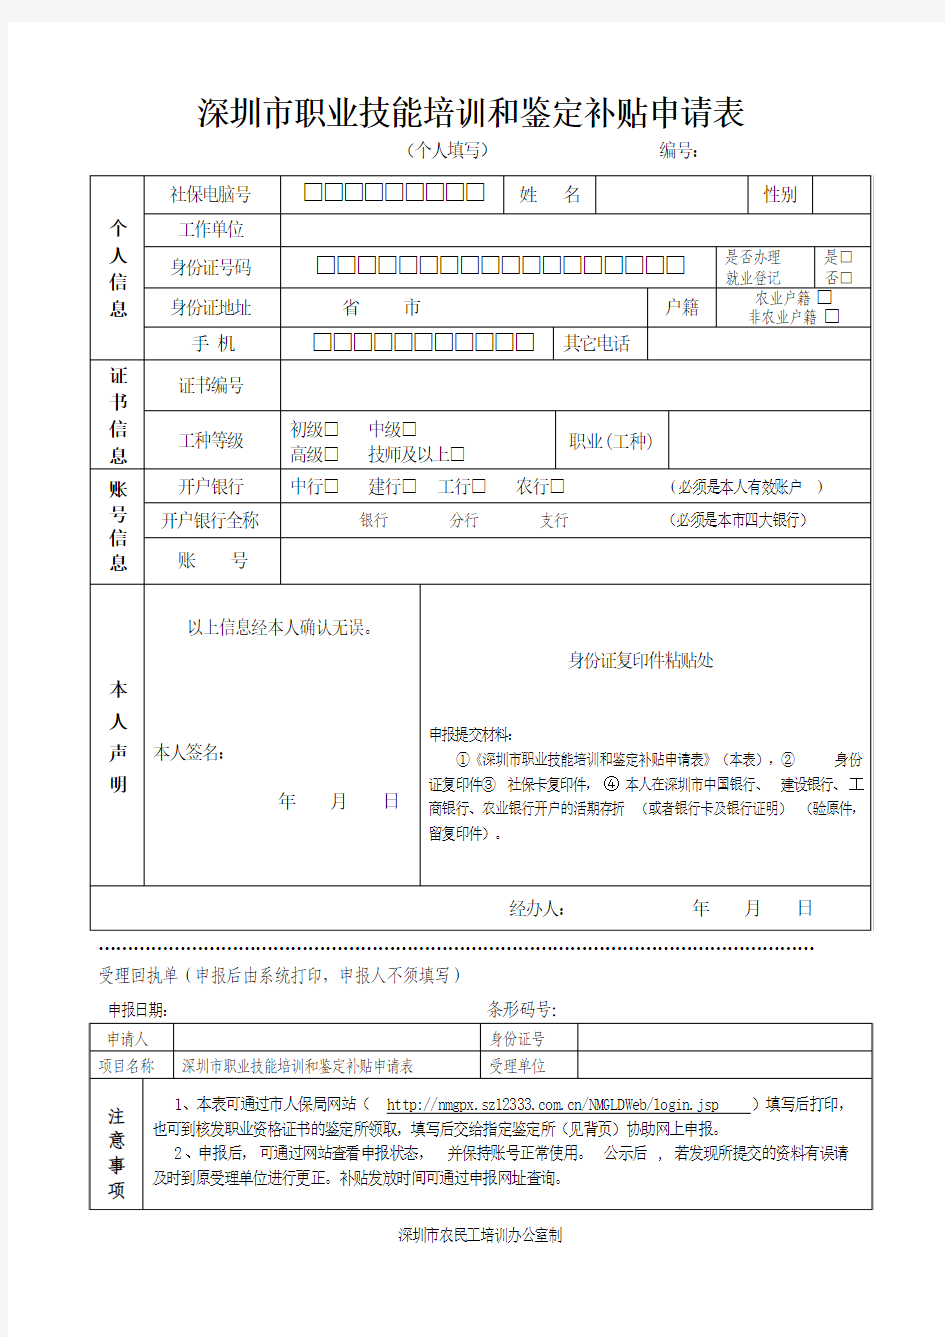 深圳市职业技能培训和鉴定补贴申请表(个人)